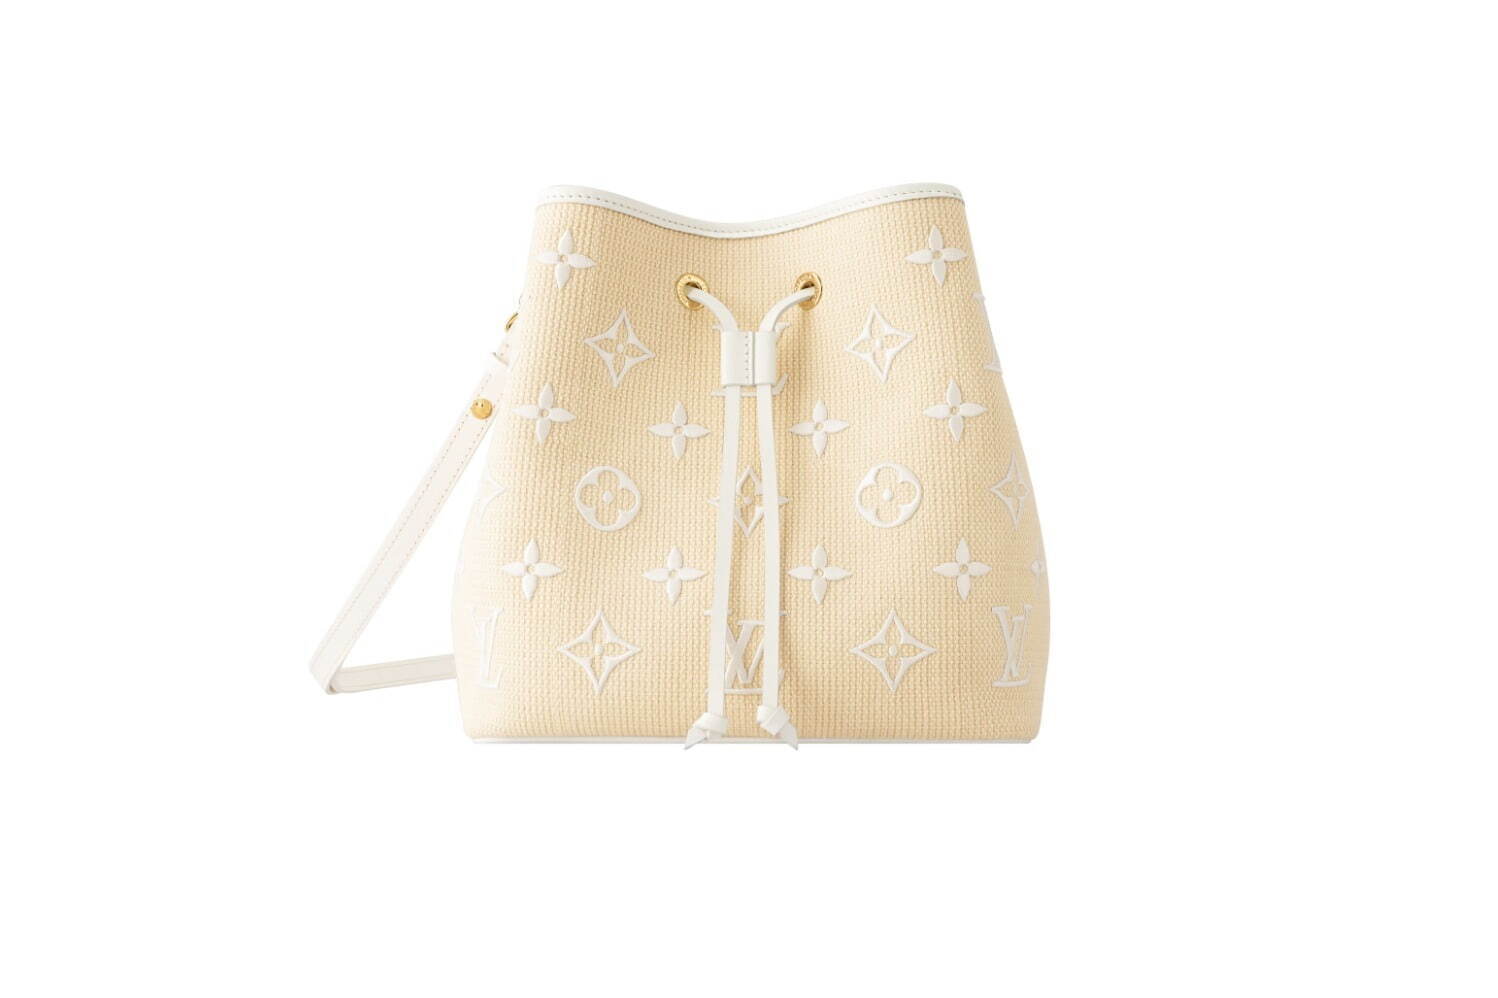 ルイ・ヴィトン“モノグラム・パターン刺繍”入りの新作バッグ